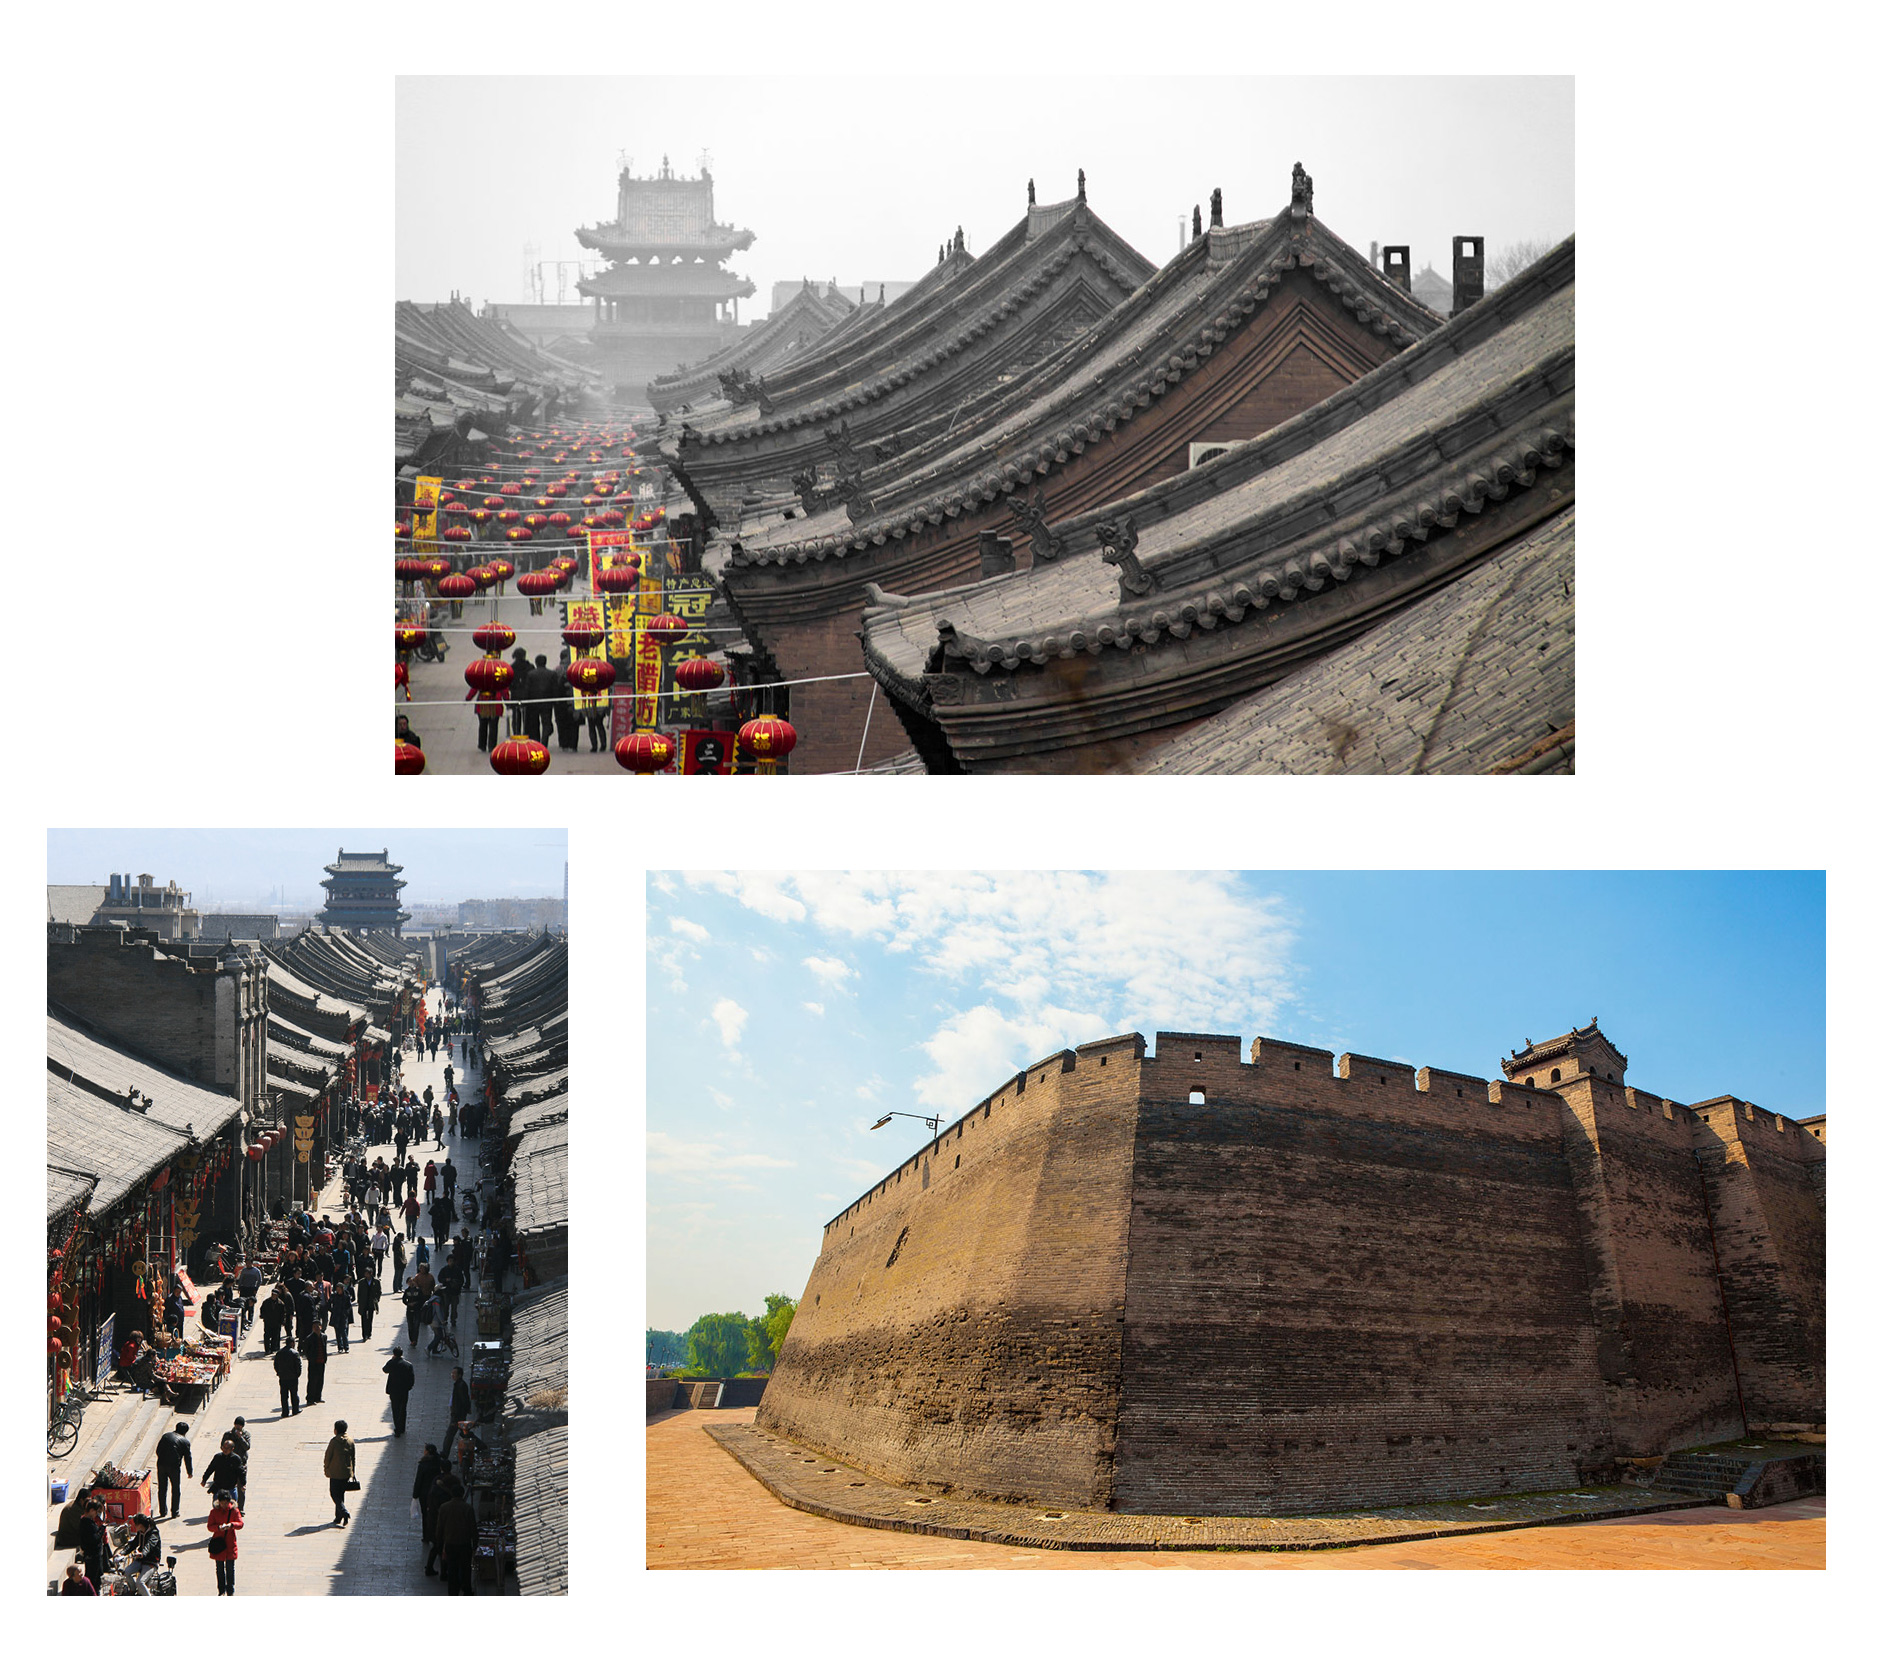 Hành trình khám phá những ngôi chùa cổ đầy bí ẩn ở Trung Quốc - 9